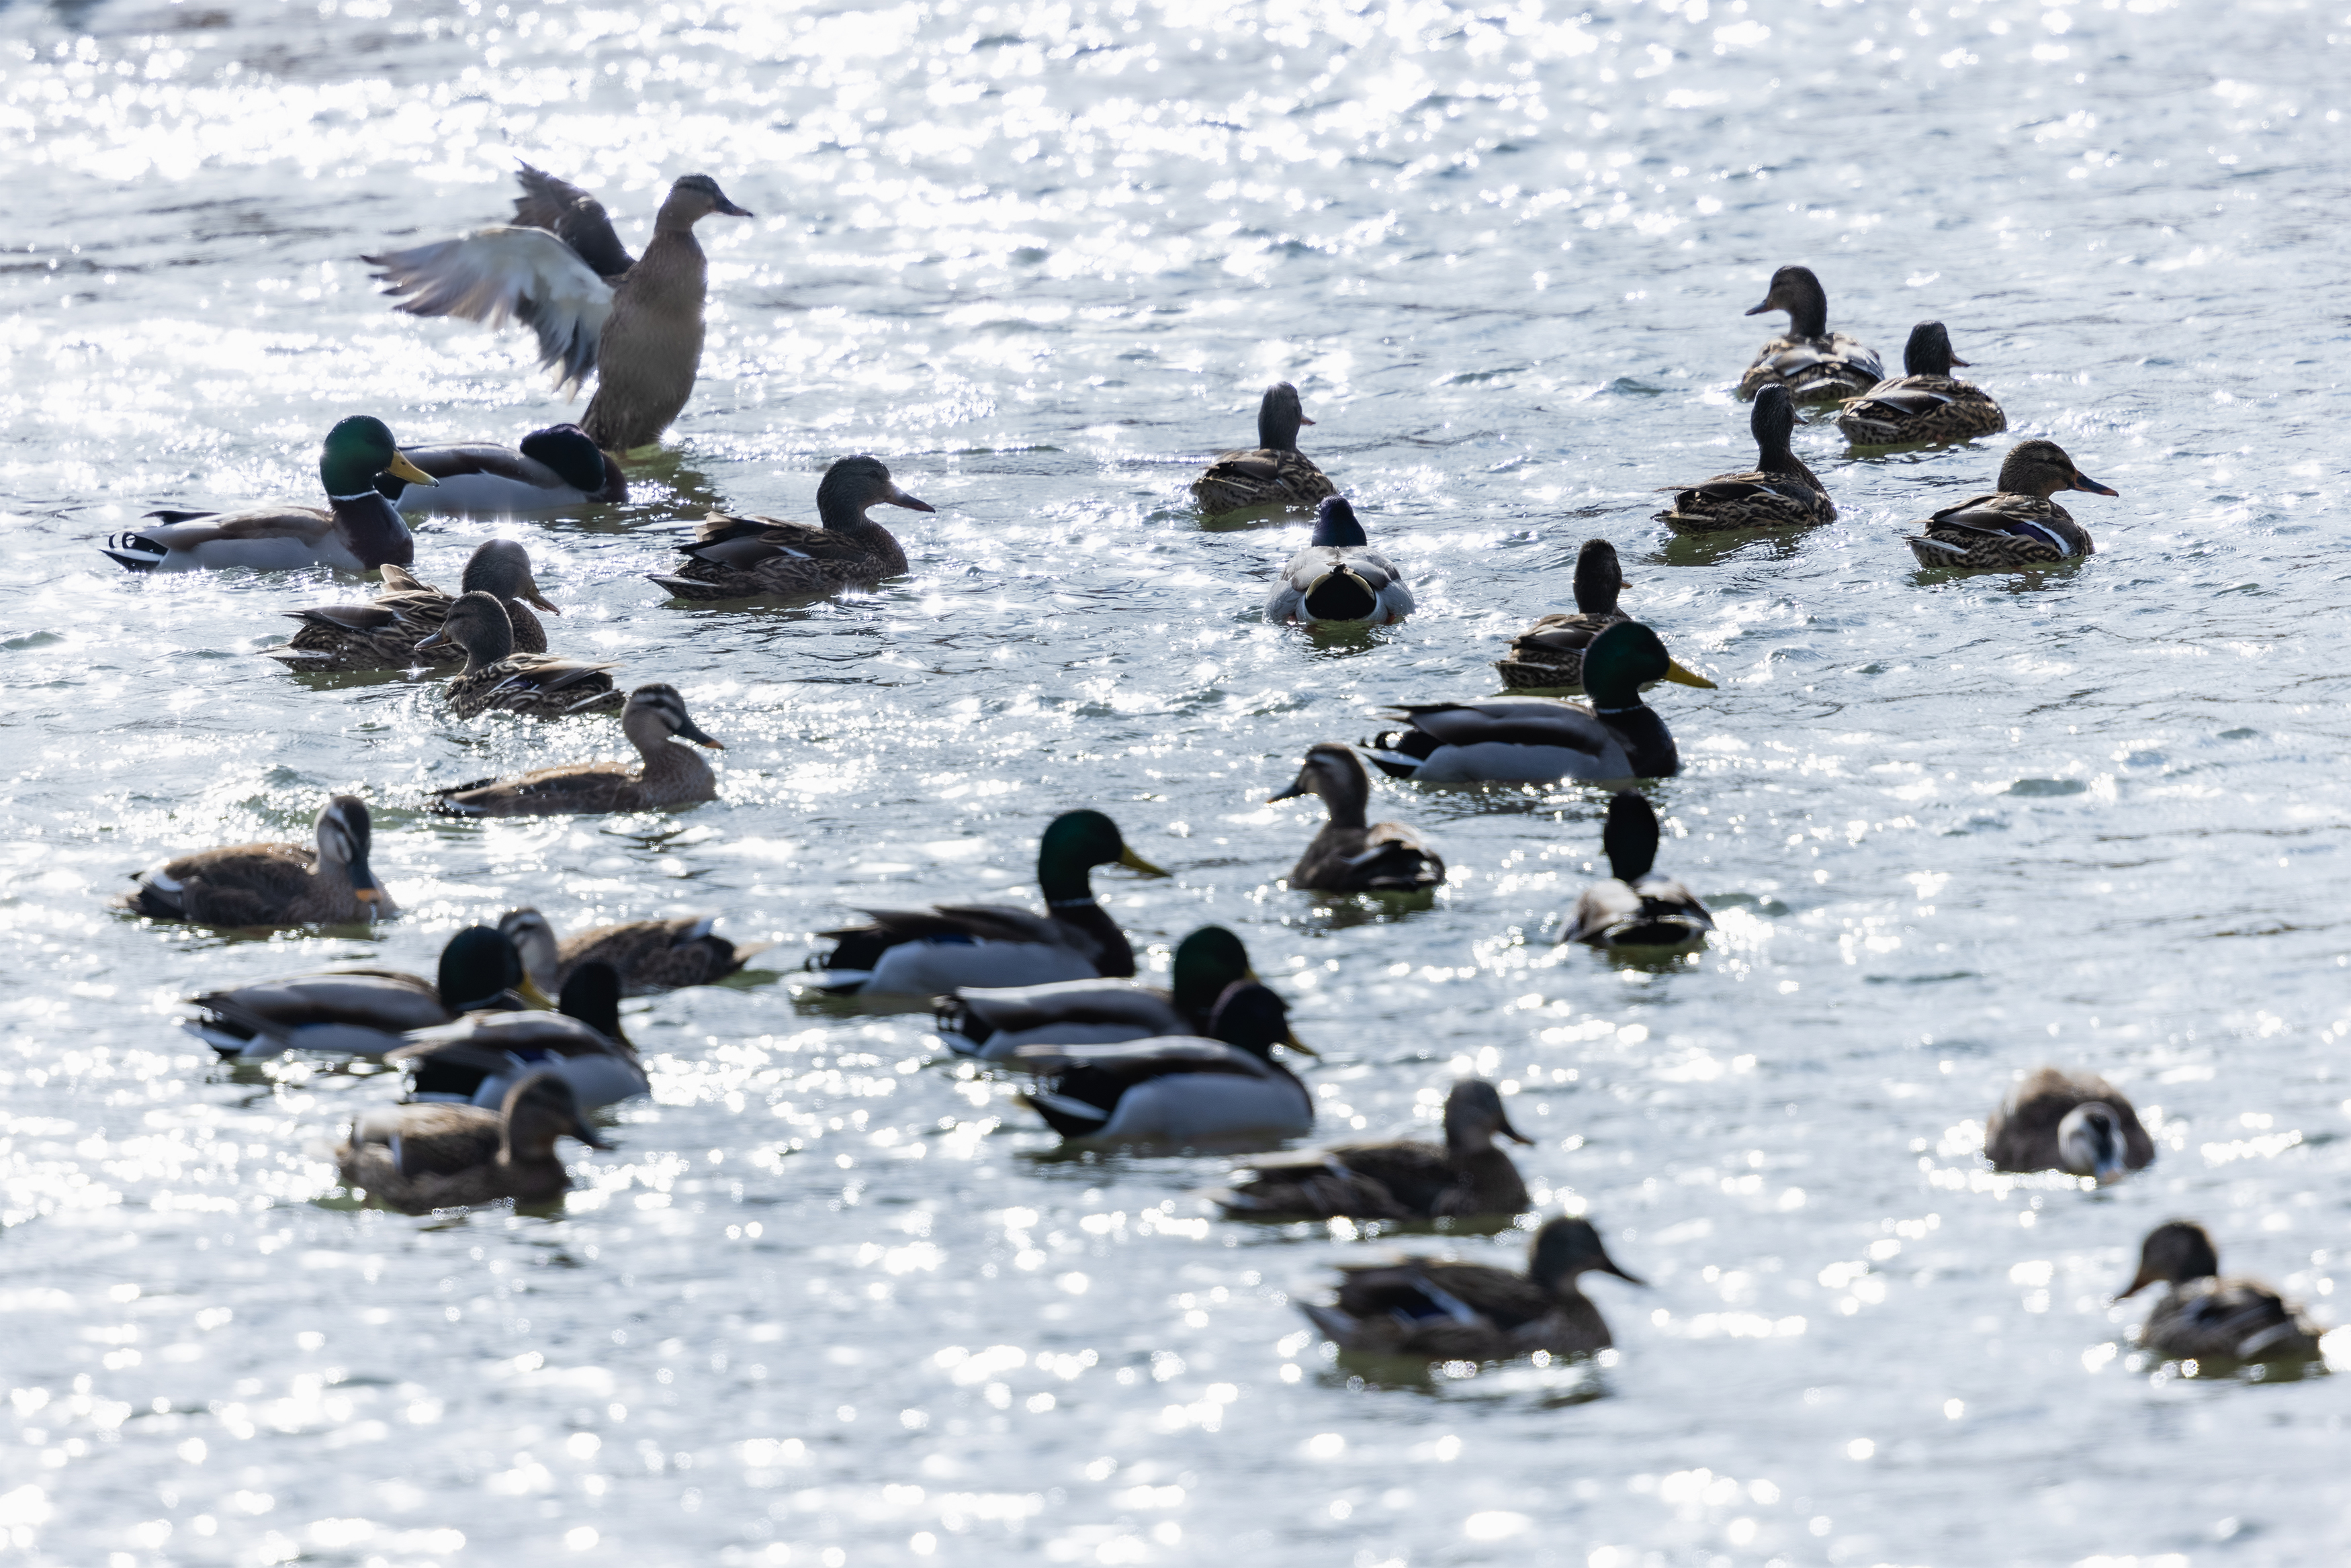 キラキラした水面とカモ 鴨 の群れ 2 無料の高画質フリー写真素材 イメージズラボ